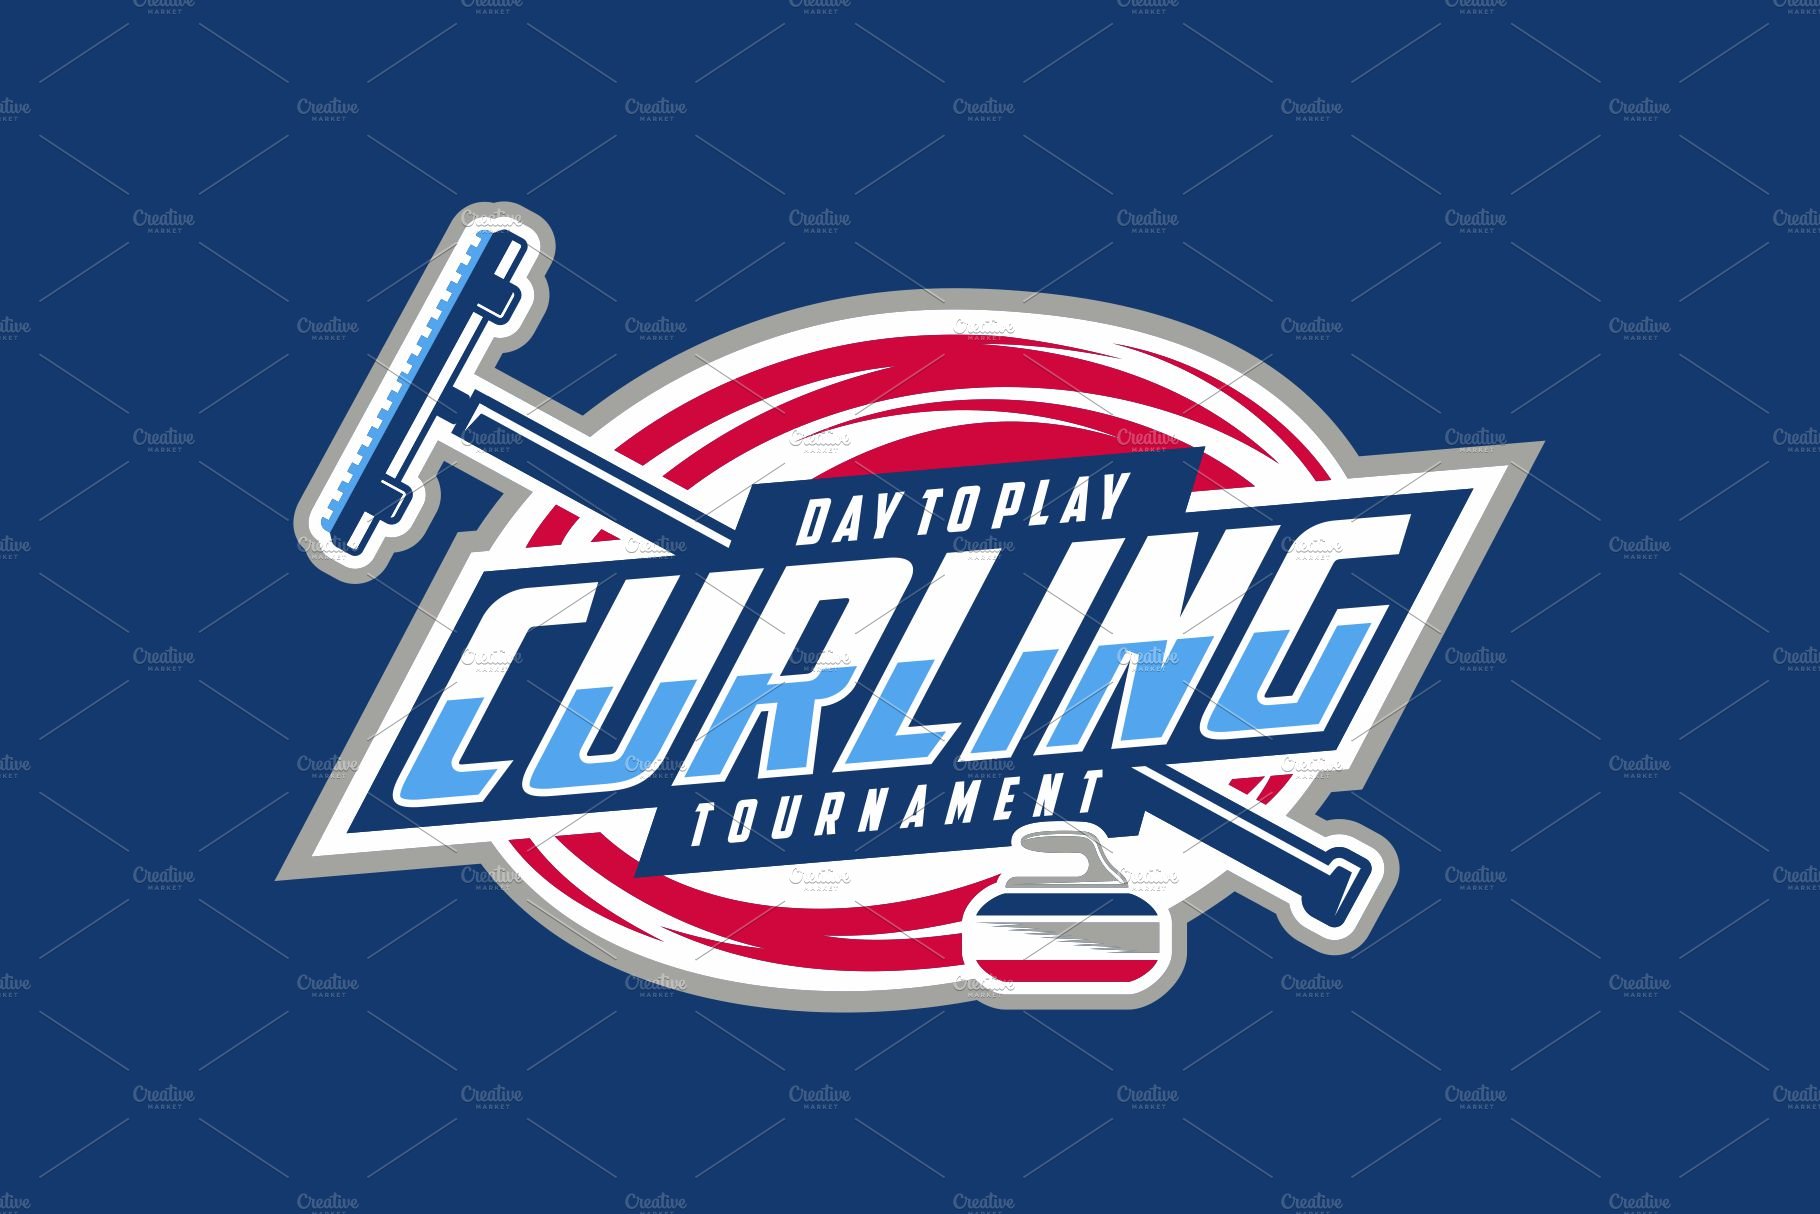 Curling Emblem Logo Design cover image.